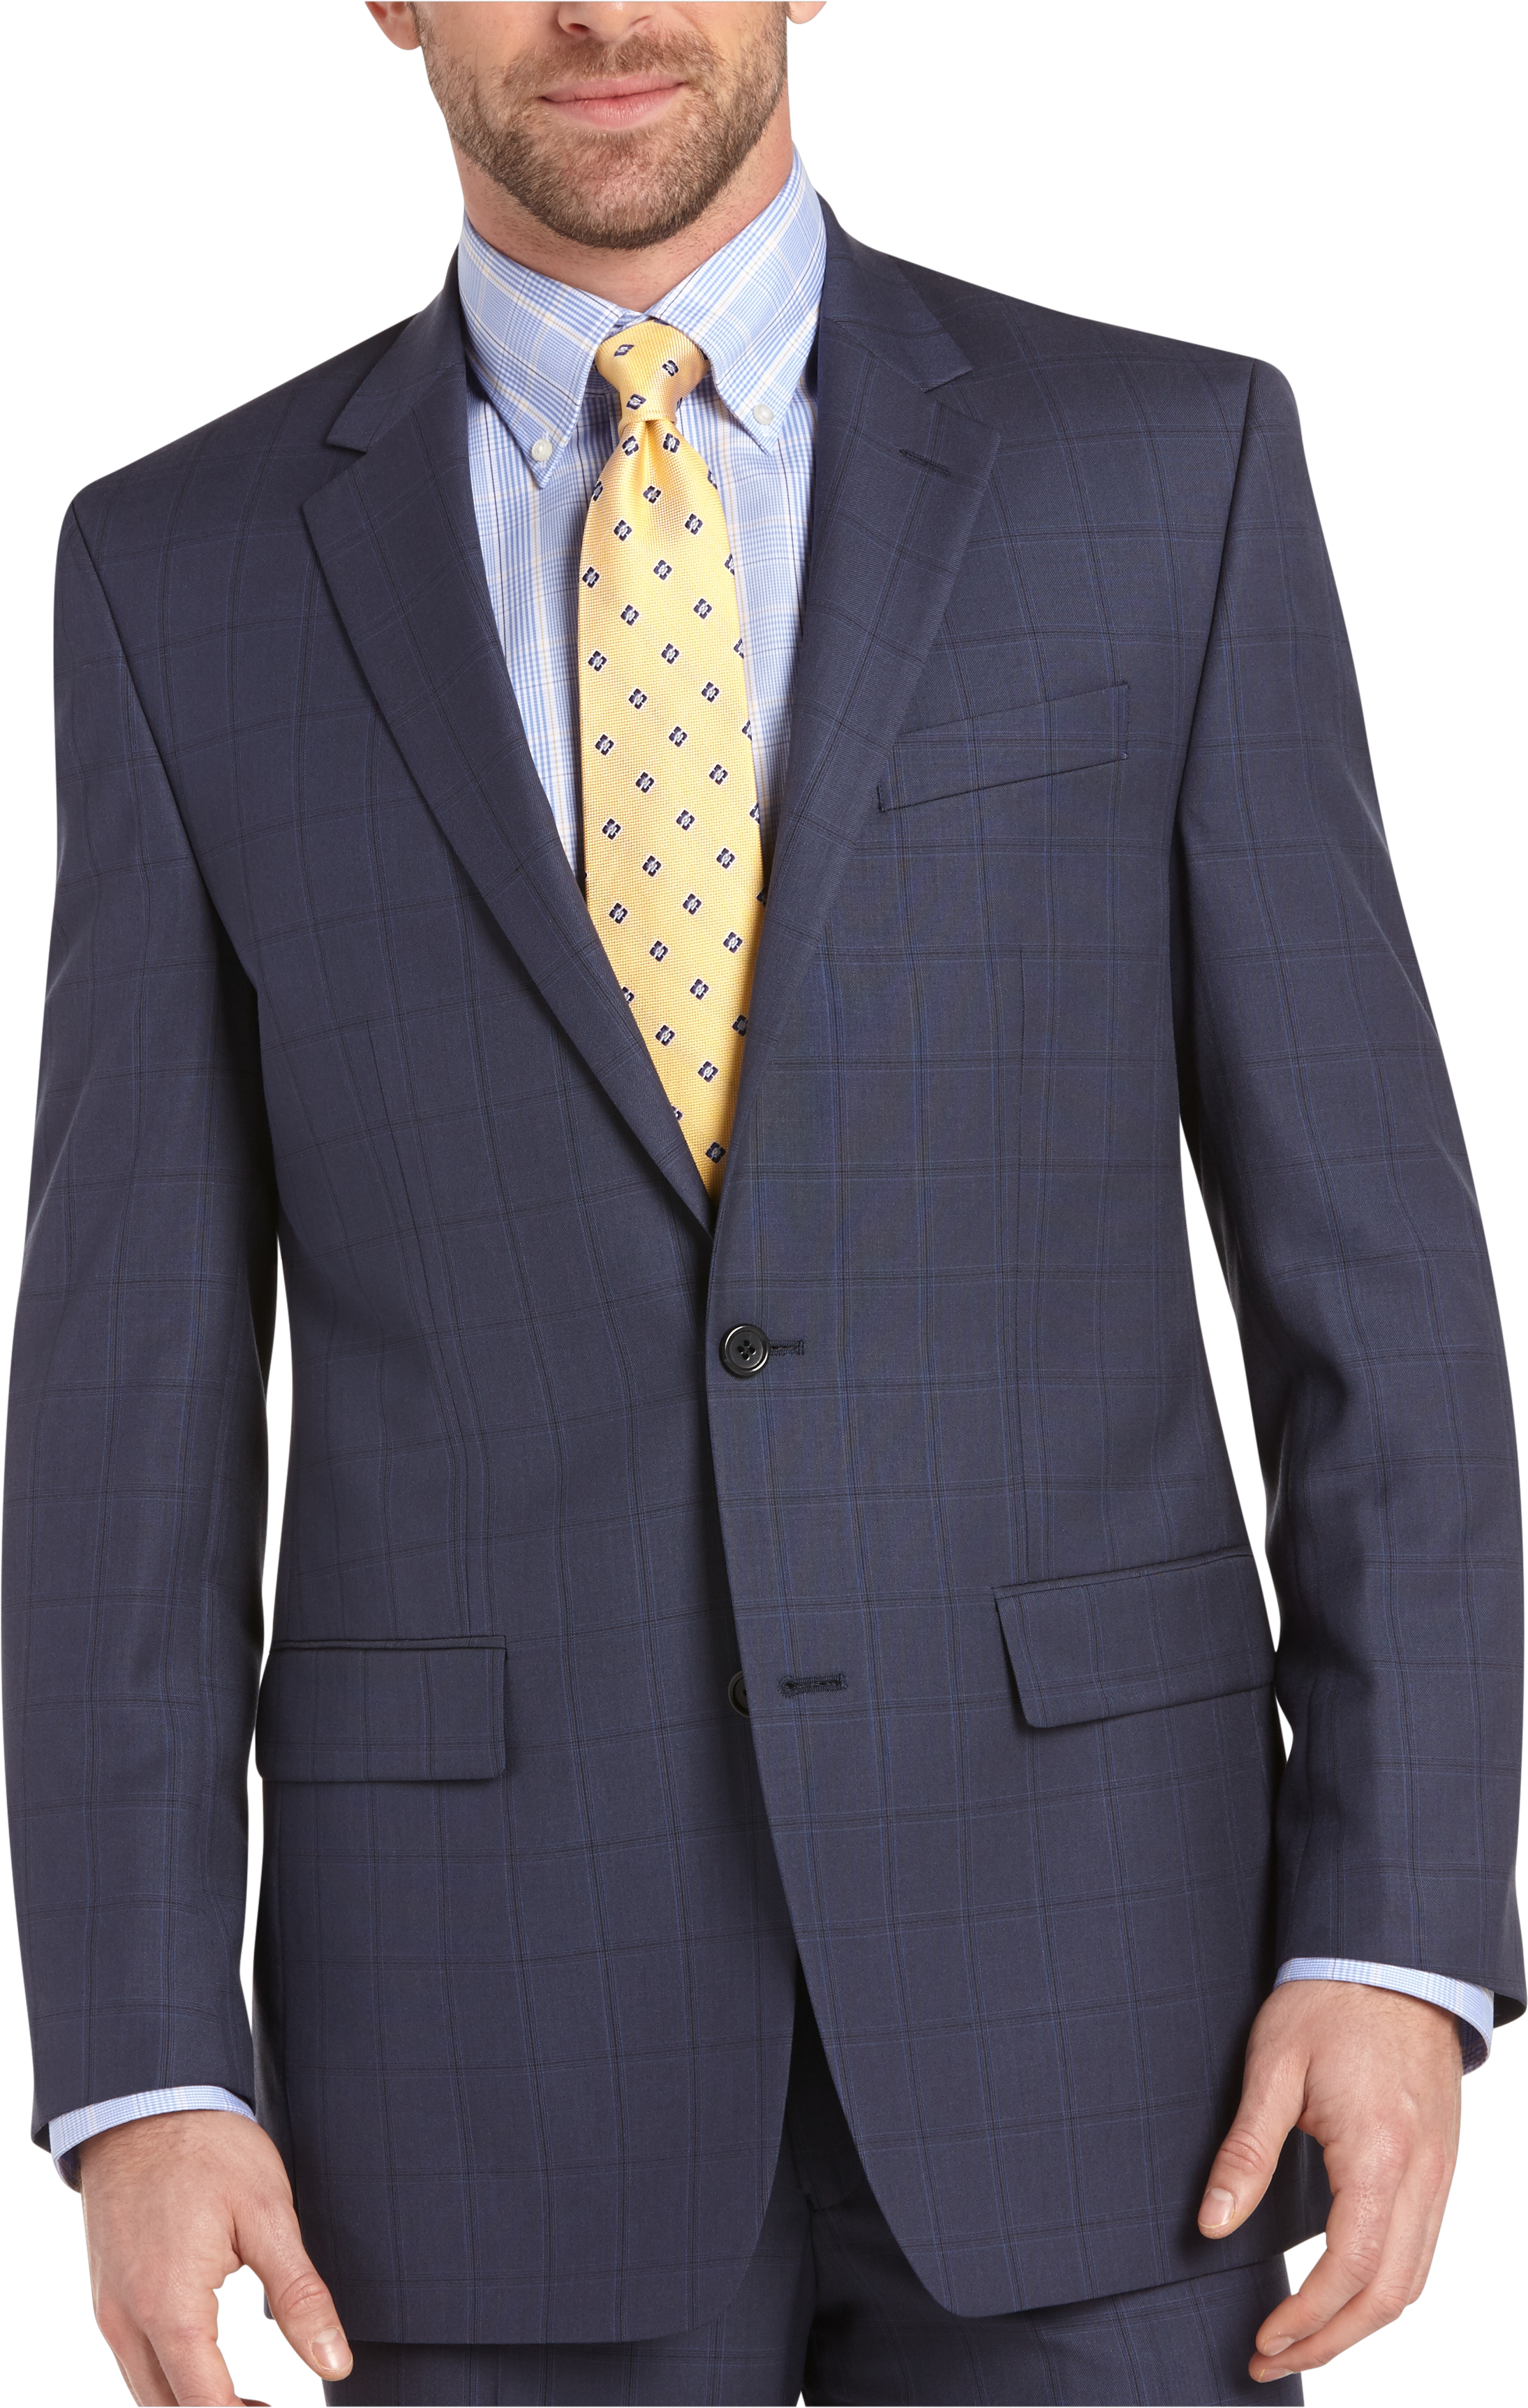 Michael Kors Blue Plaid Modern Fit Suit - Men's Sale | Men's Wearhouse